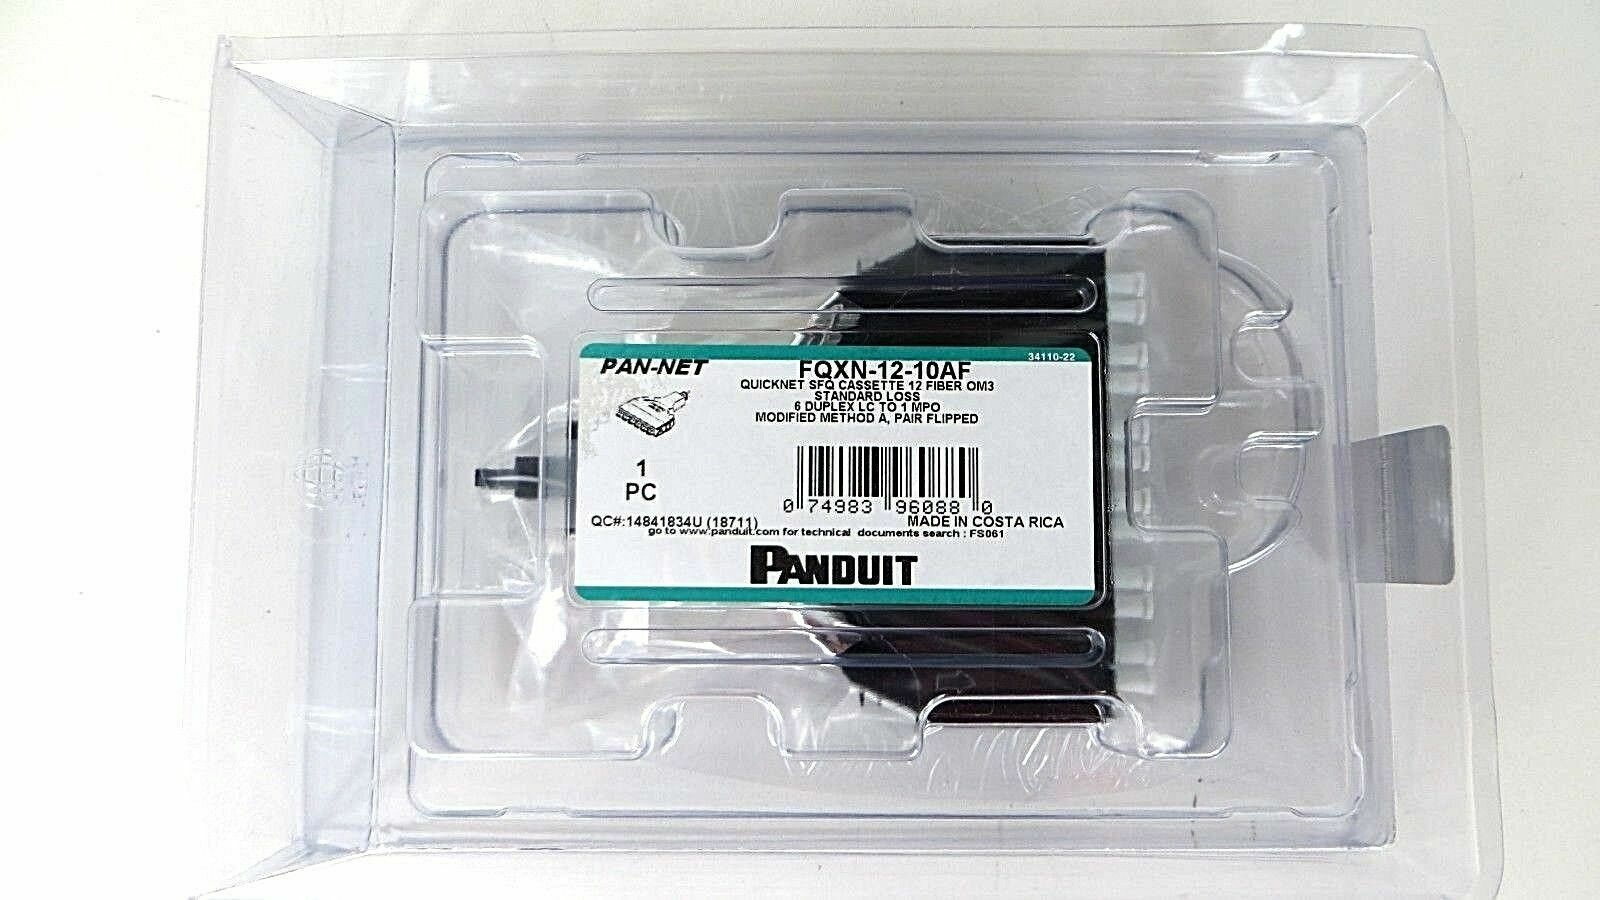 Panduit FQXN-12-10AF Quicknet SFQ MTP 12 Fiber Optic Cassette